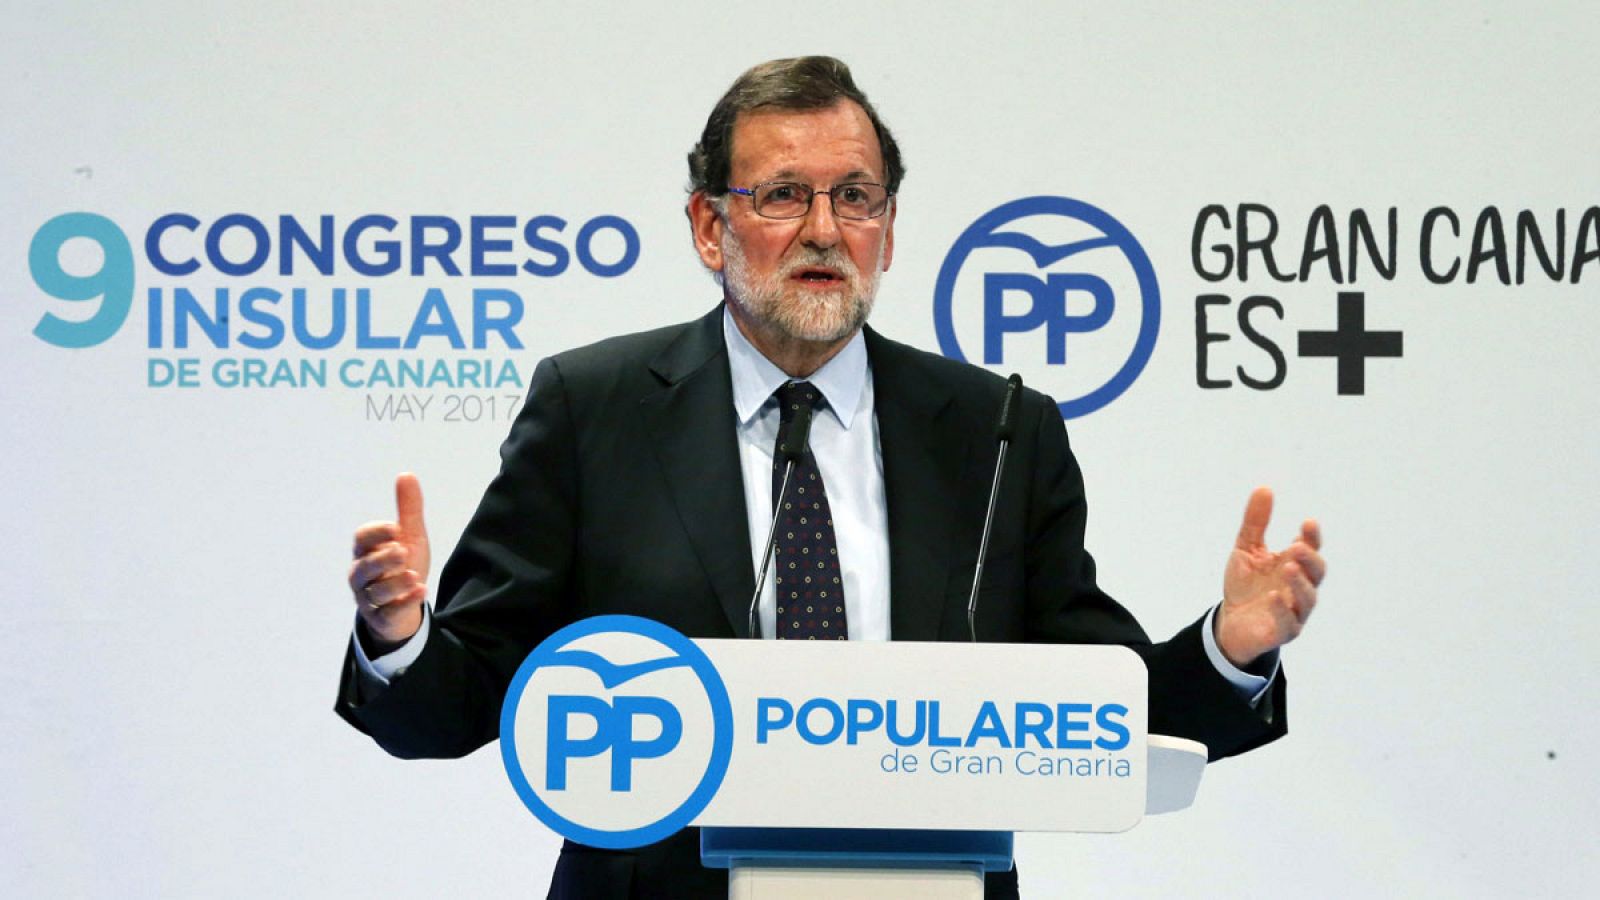 El presidente del gobierno, Mariano Rajoy, durante su intervención en la clausura del congreso insular del PP de Gran Canaria celebrado el viernes 5 de mayo de 2017 en Las Palmas.